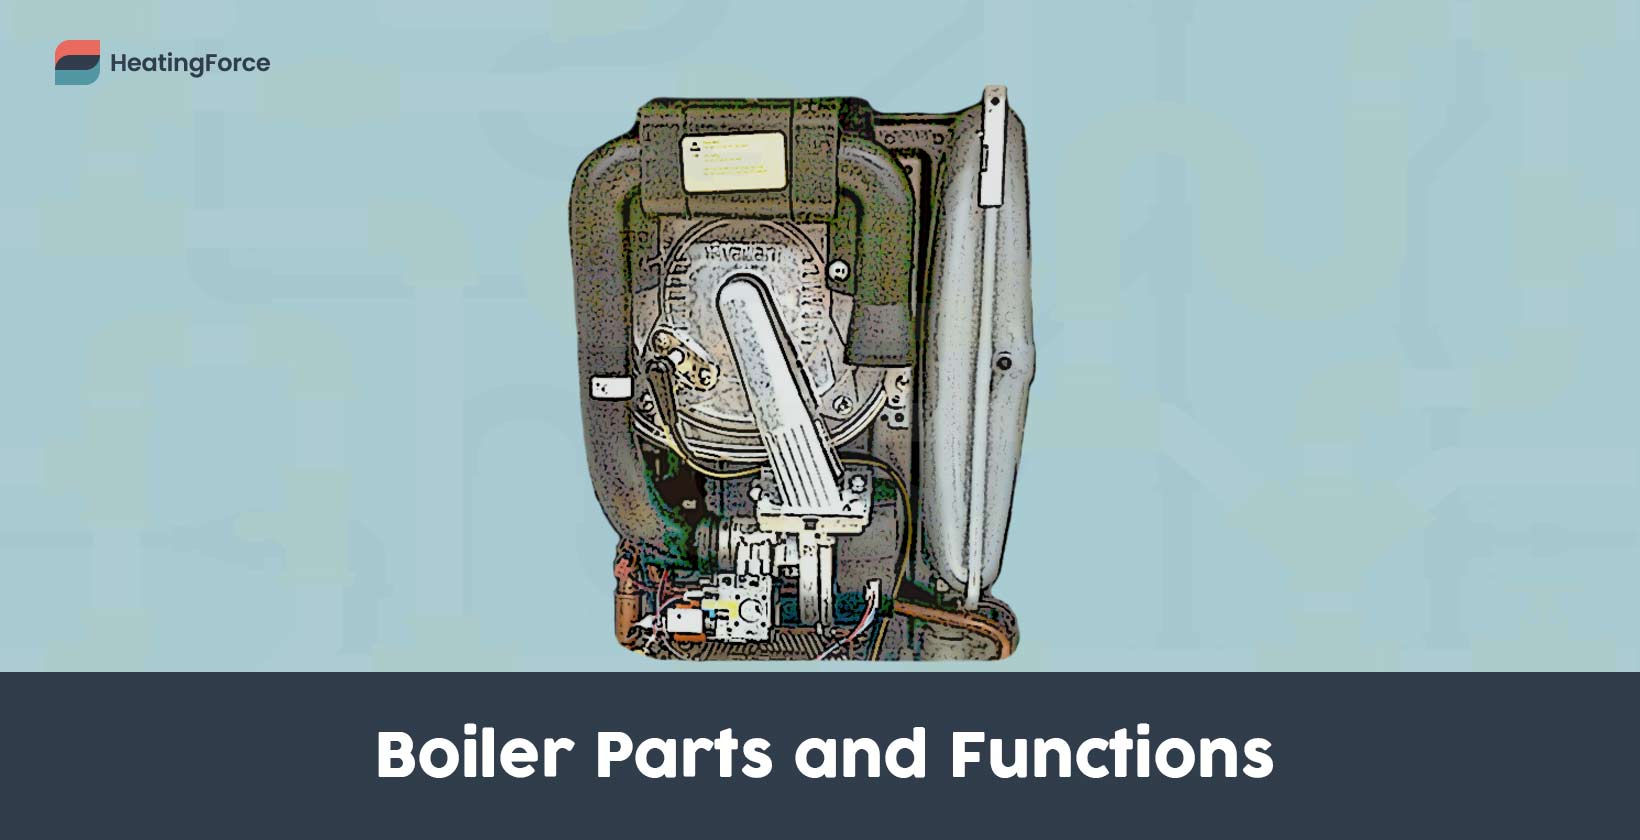 Boiler parts